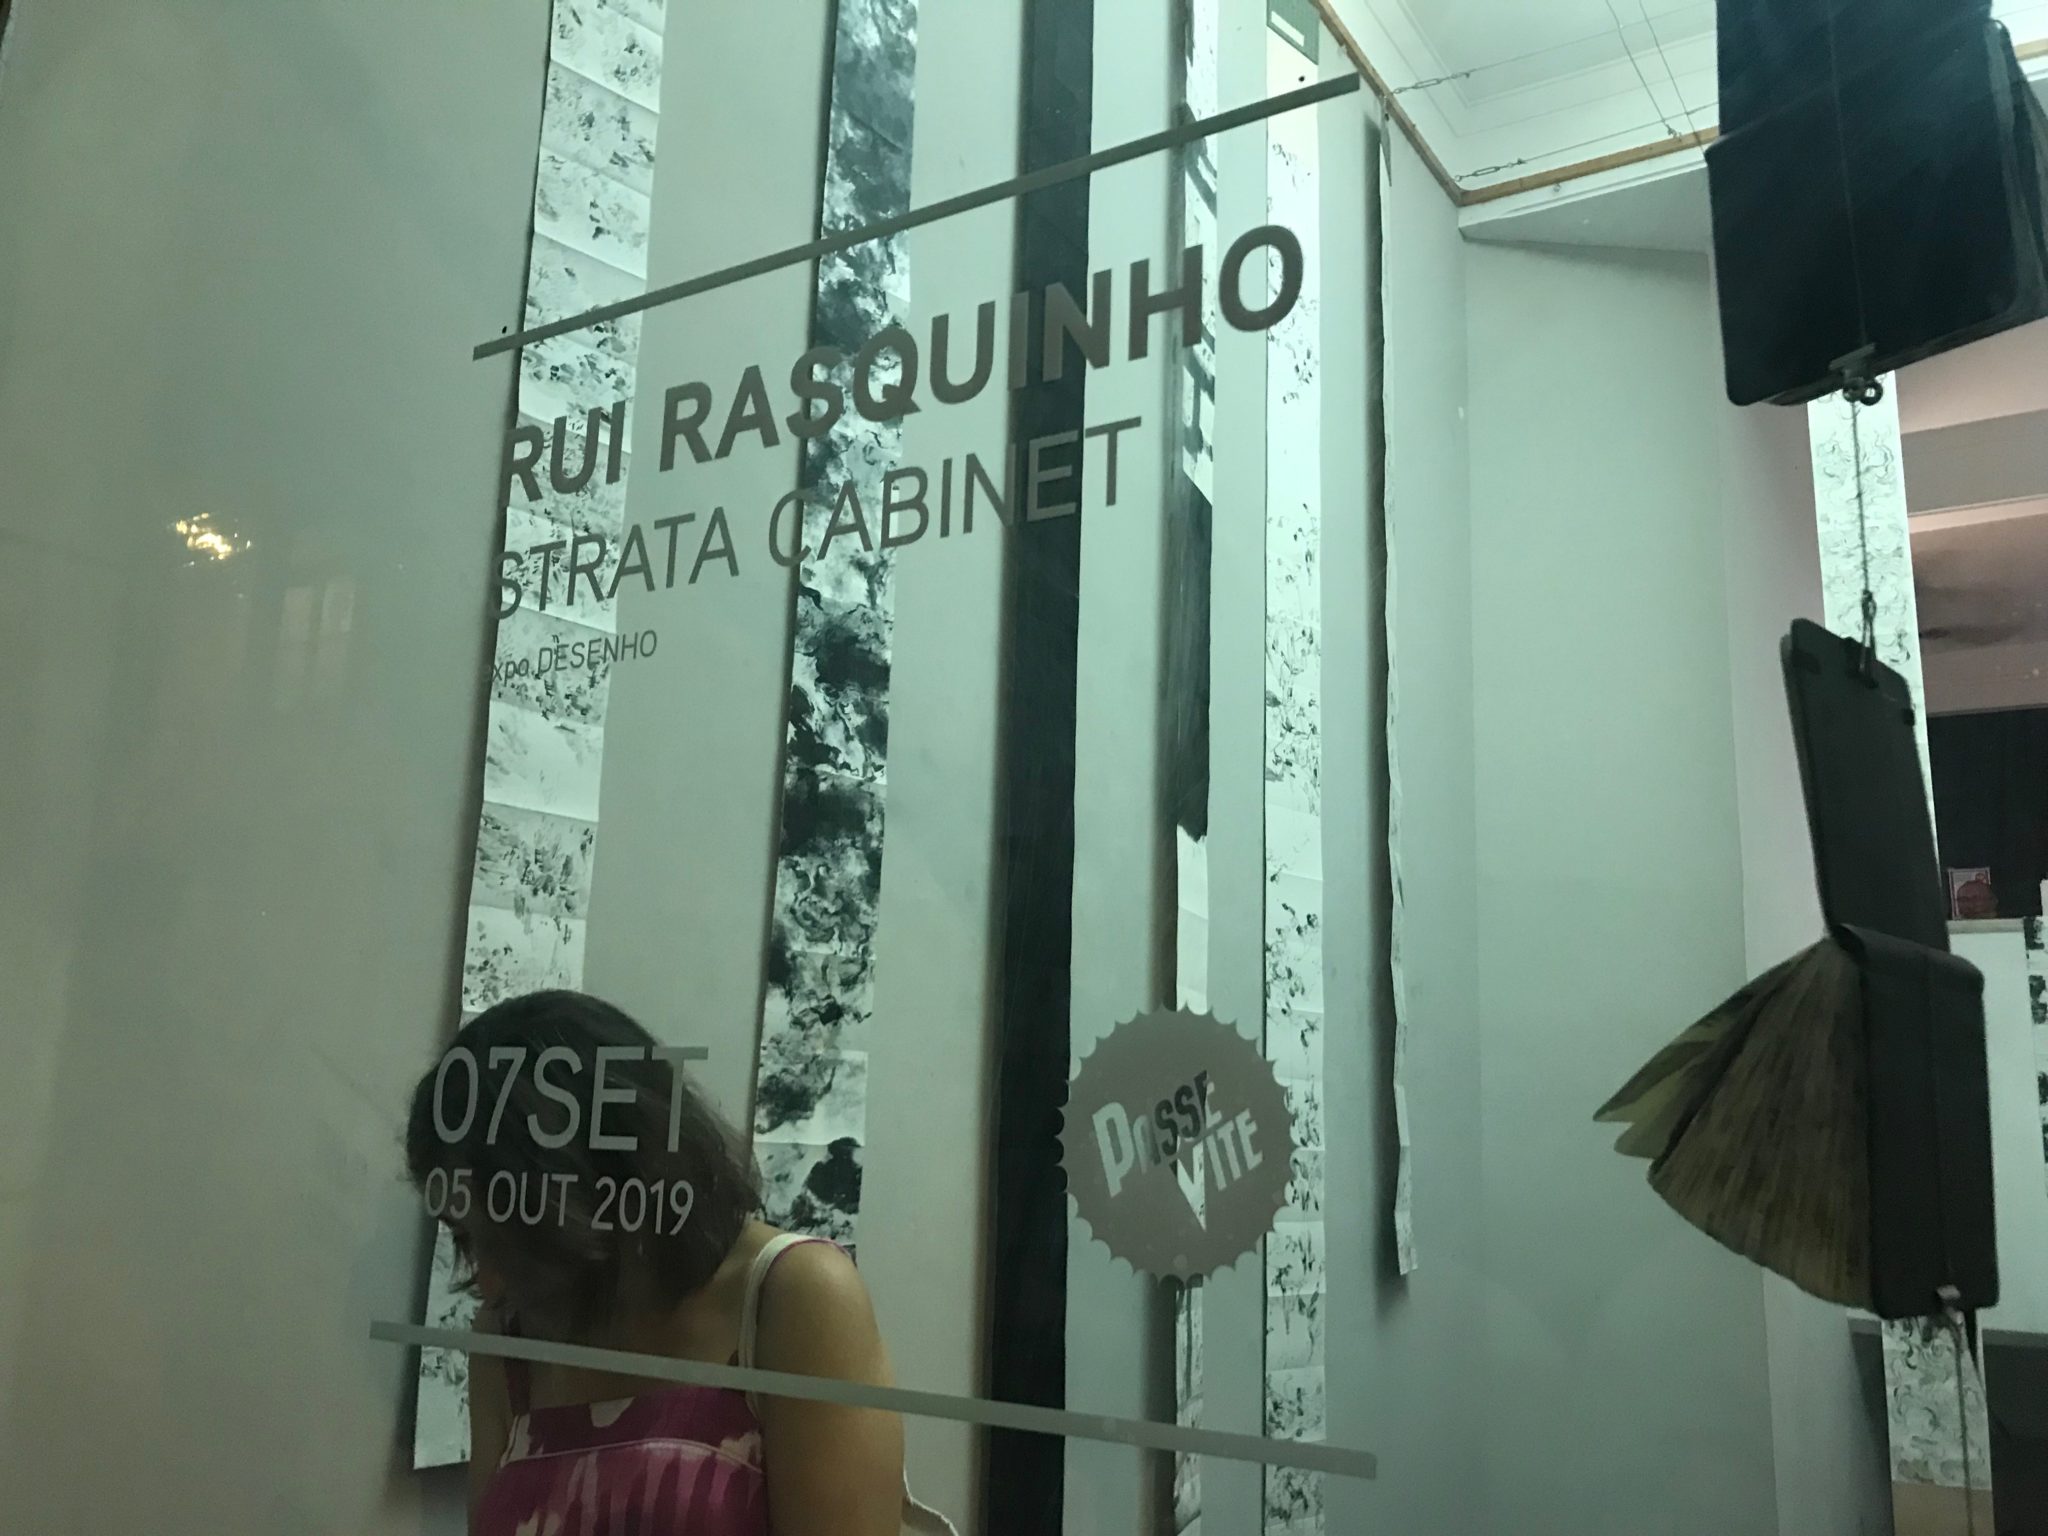 “Strata Cabinet”, de Rui Rasquinho, inaugurada na galeria Passevite em Lisboa 